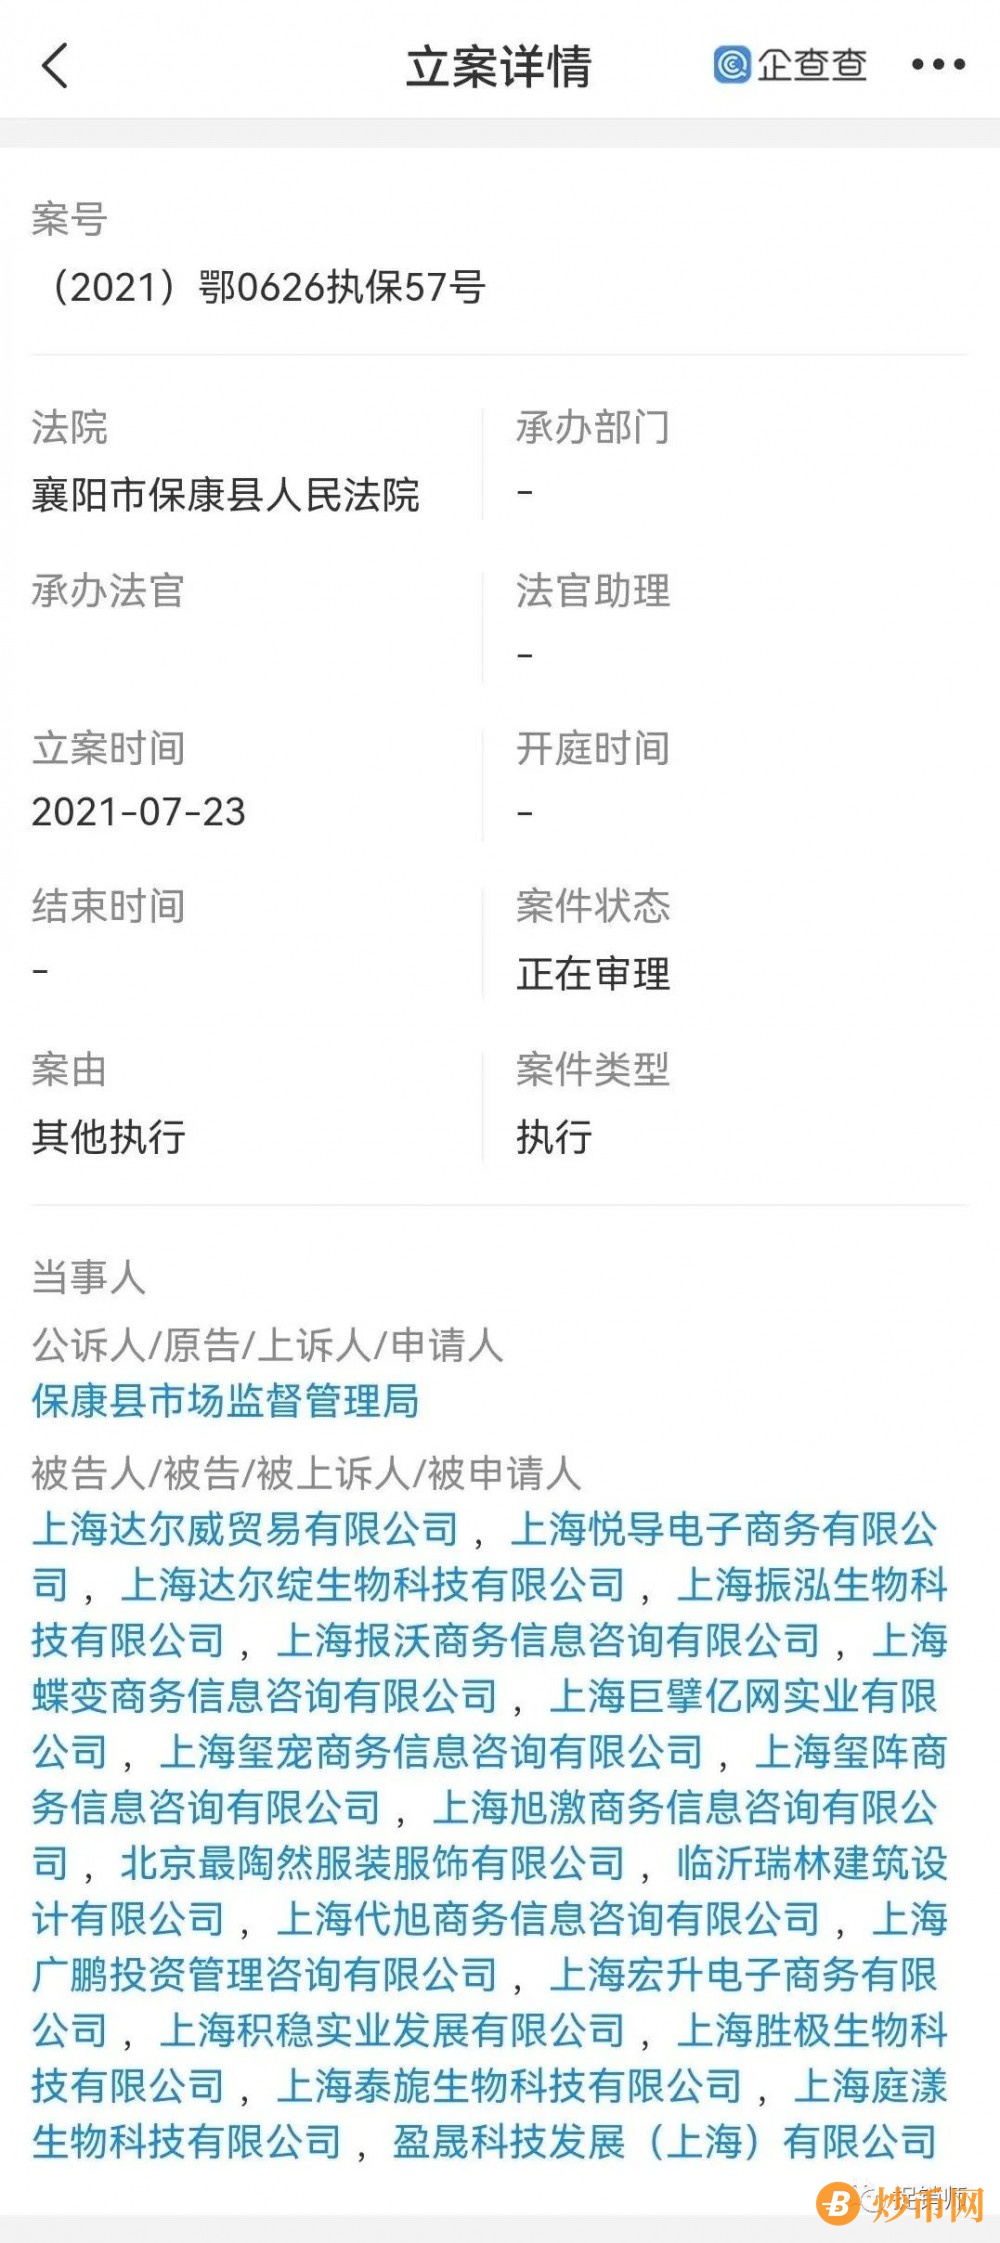 此前曾遭保全审查的上海达尔威因涉嫌网络传销遭冻账6亿元插图1